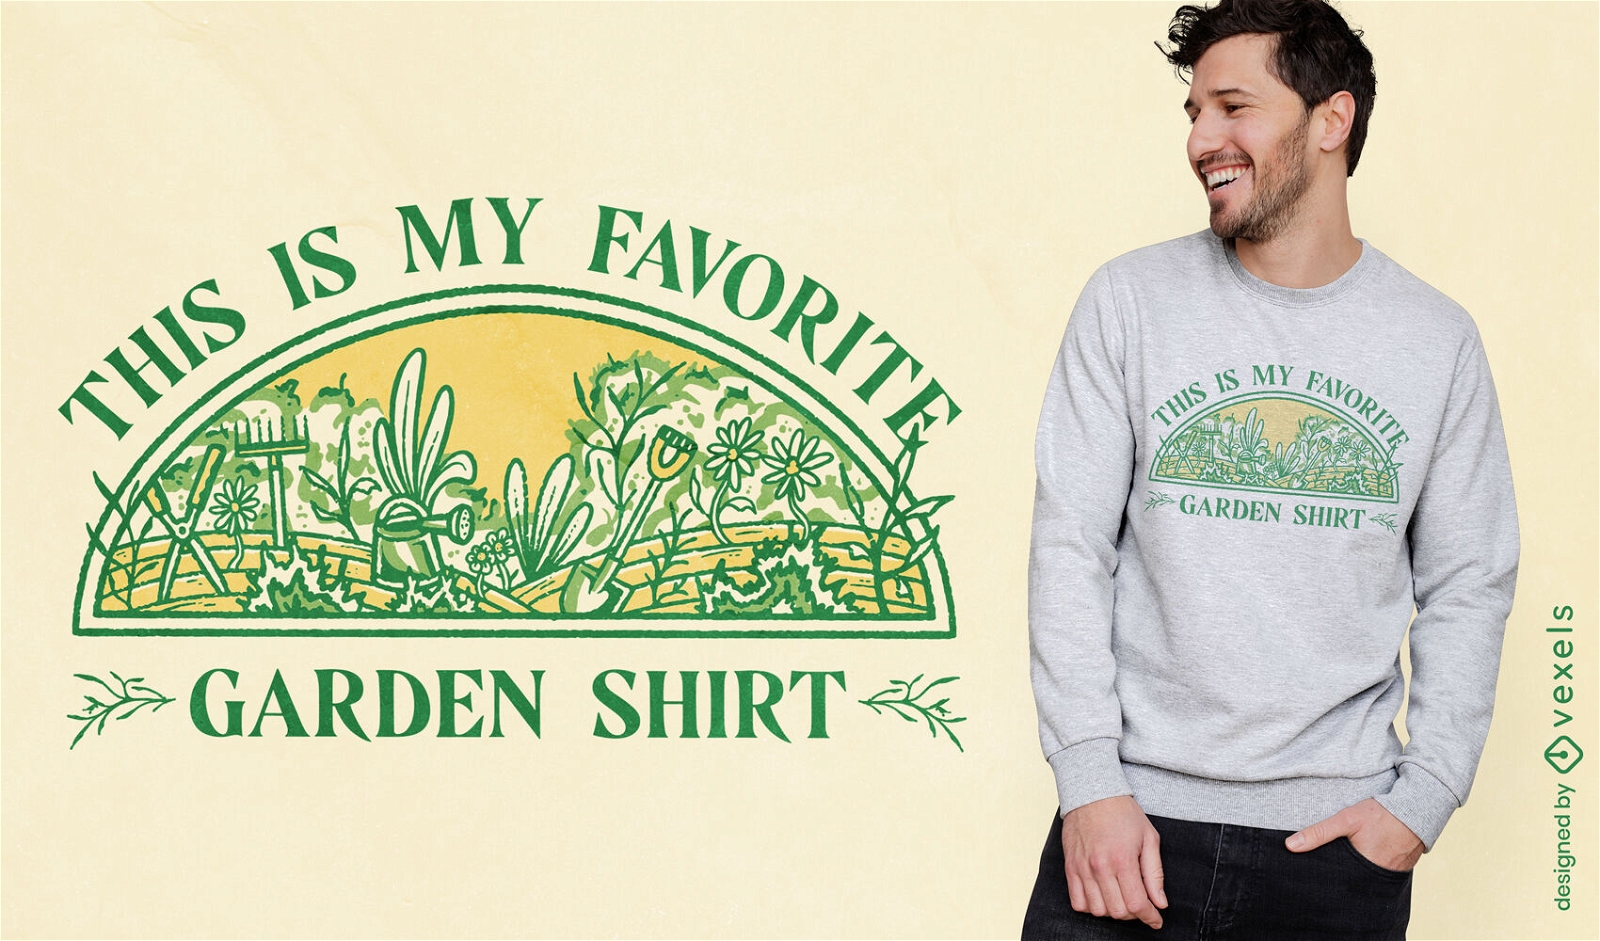 Diseño de camiseta de camisa de jardín favorito